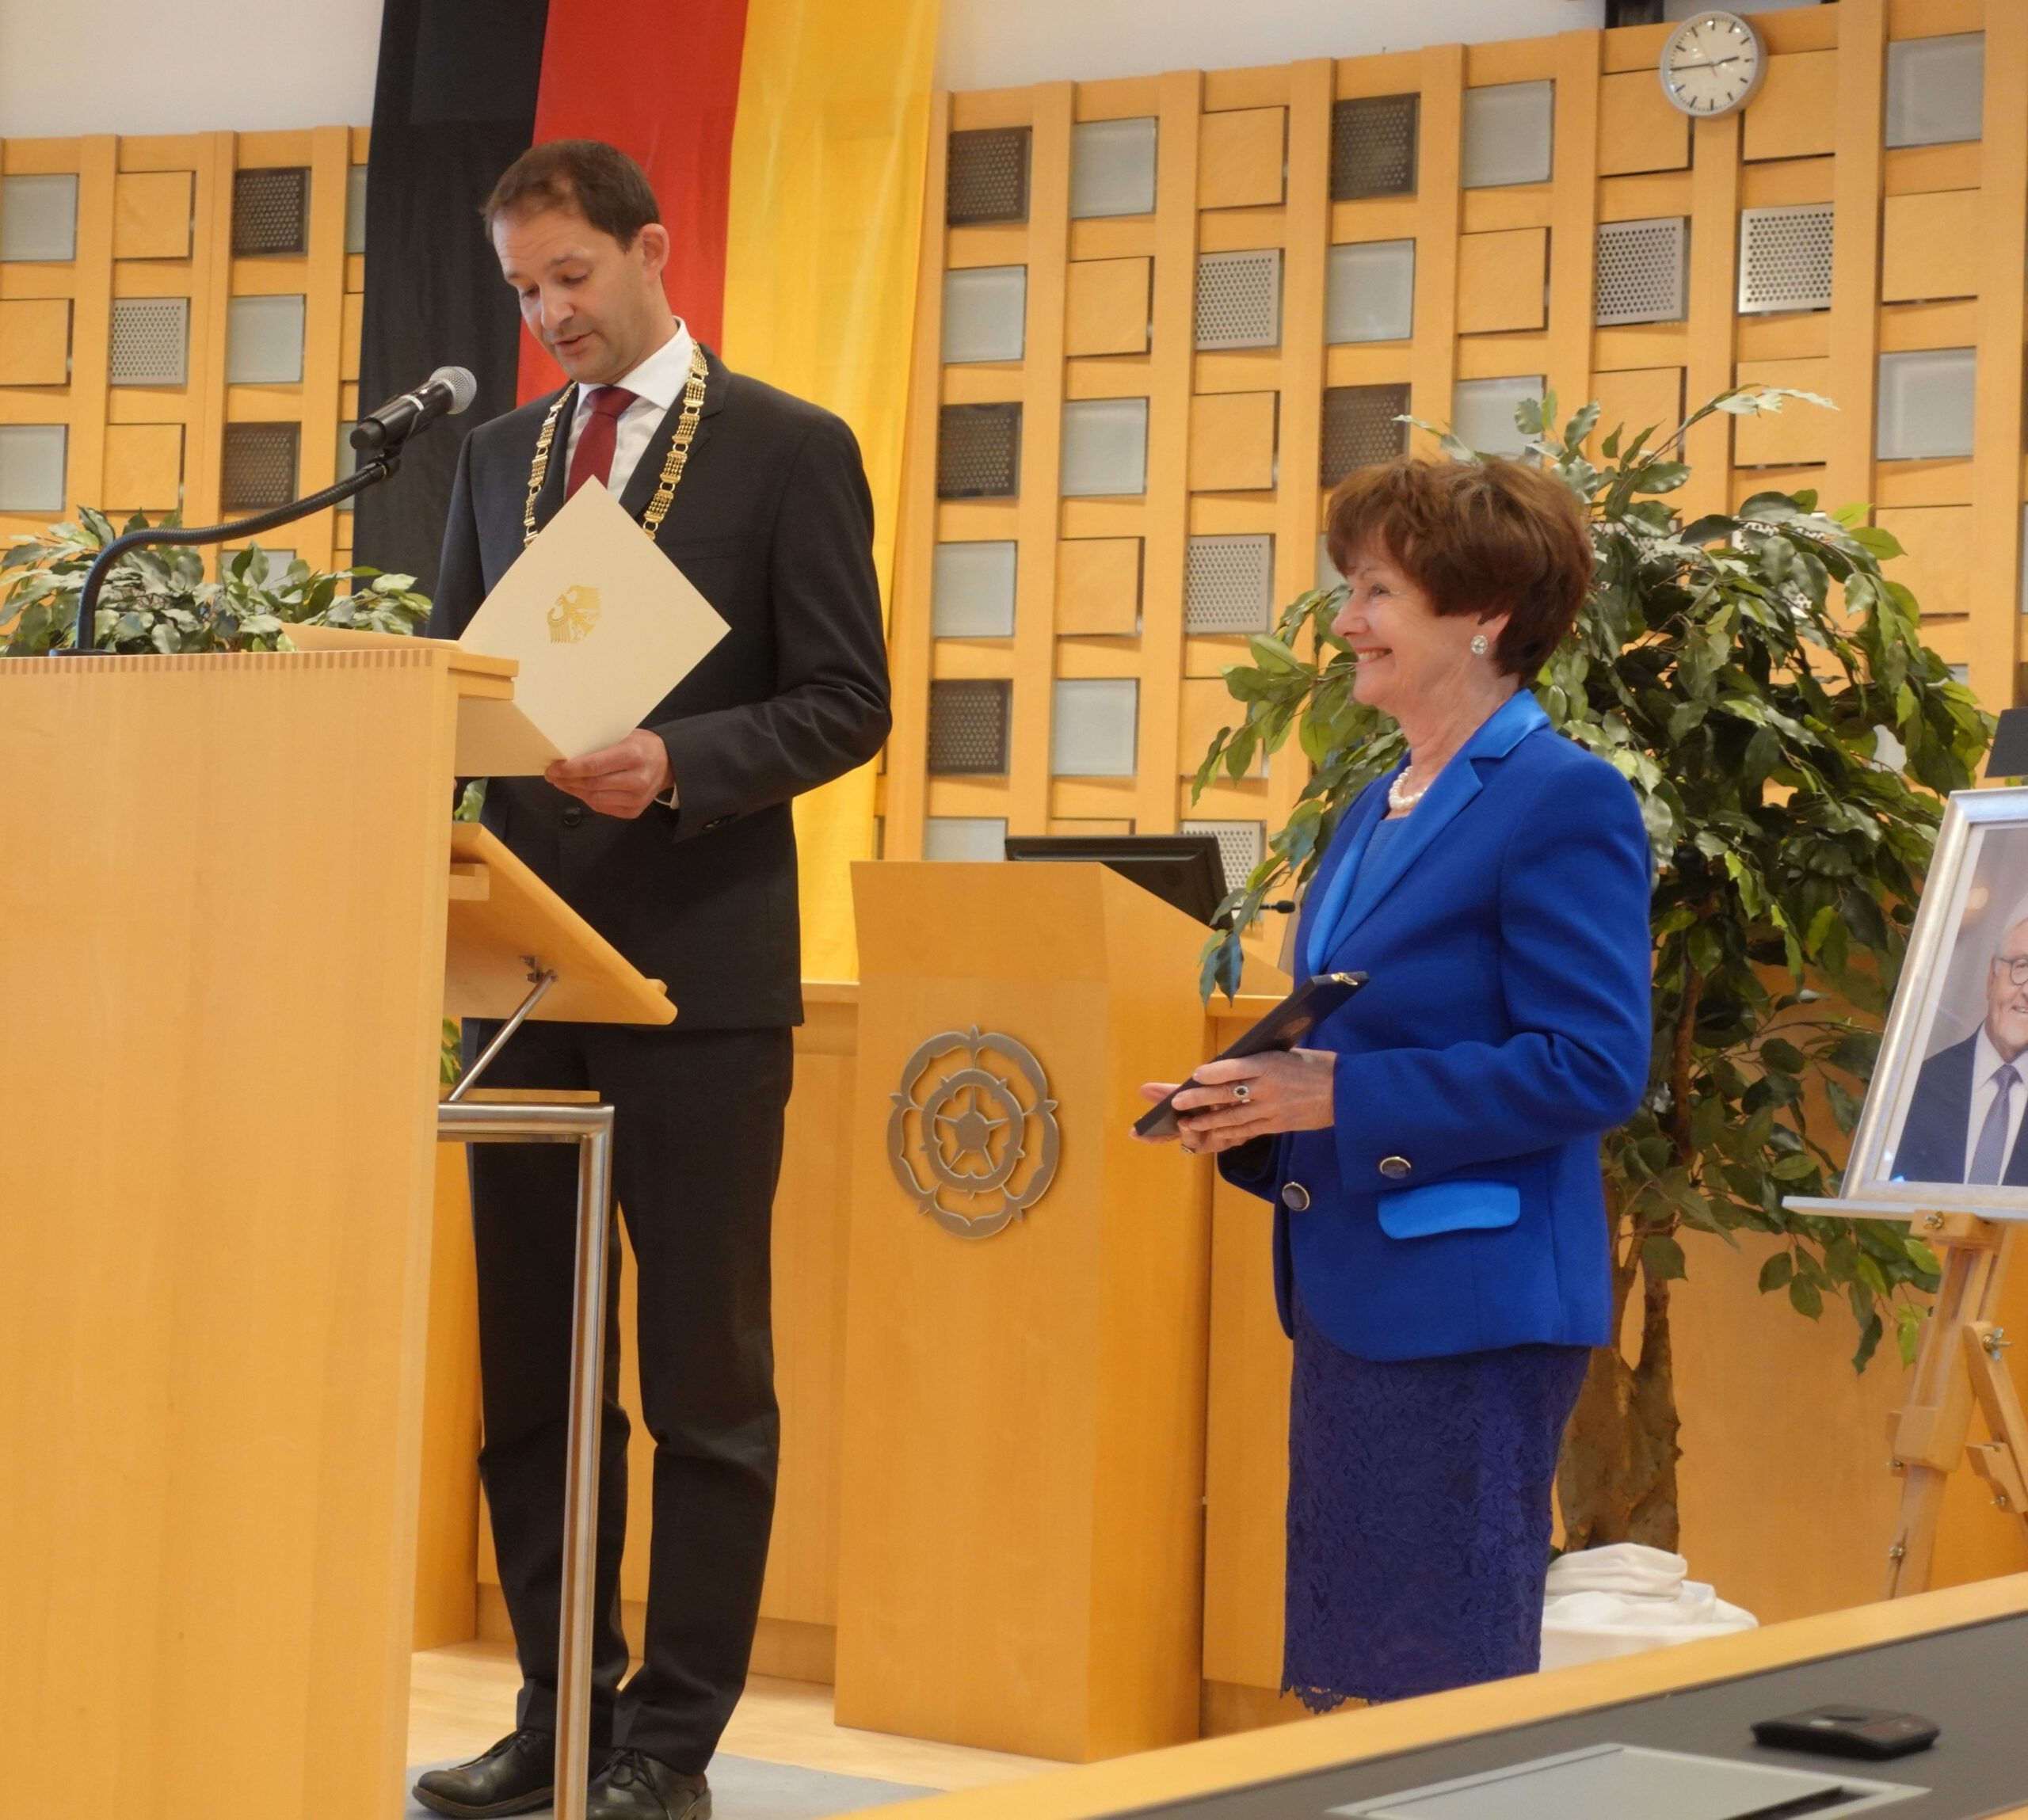 Oberbürgermeister Andreas Maerz bei seiner Rede. Eleonore Dambach-Trapp steht rechts daneben in blauem Kostüm